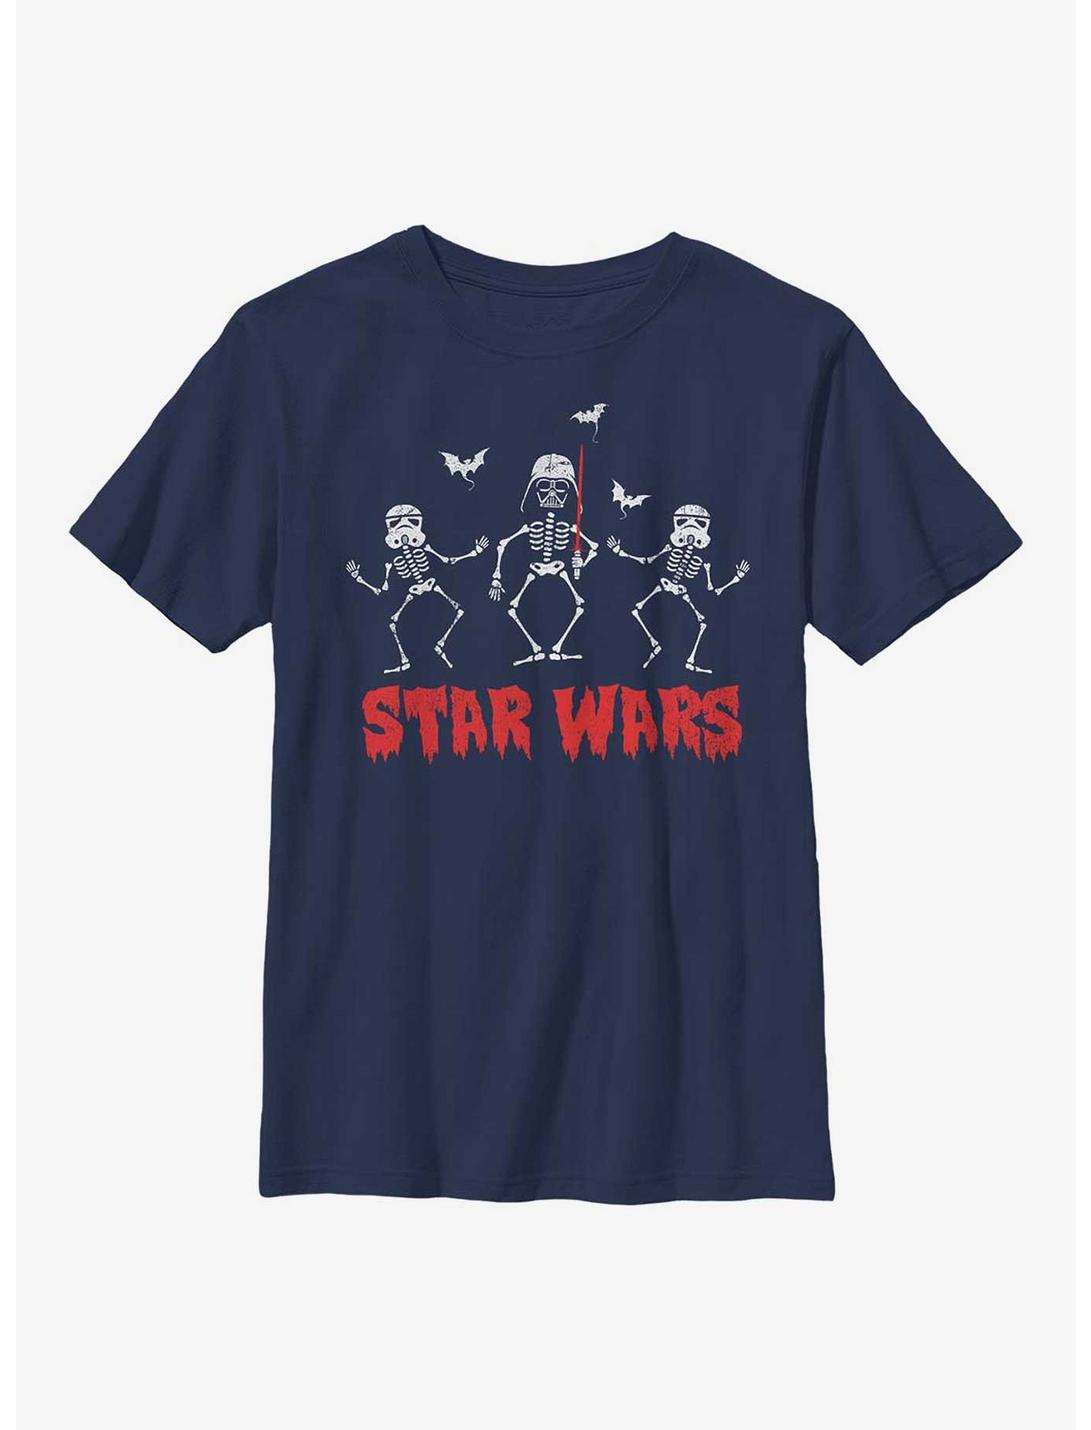 Star Wars Creep Wars Youth T-Shirt, NAVY, hi-res